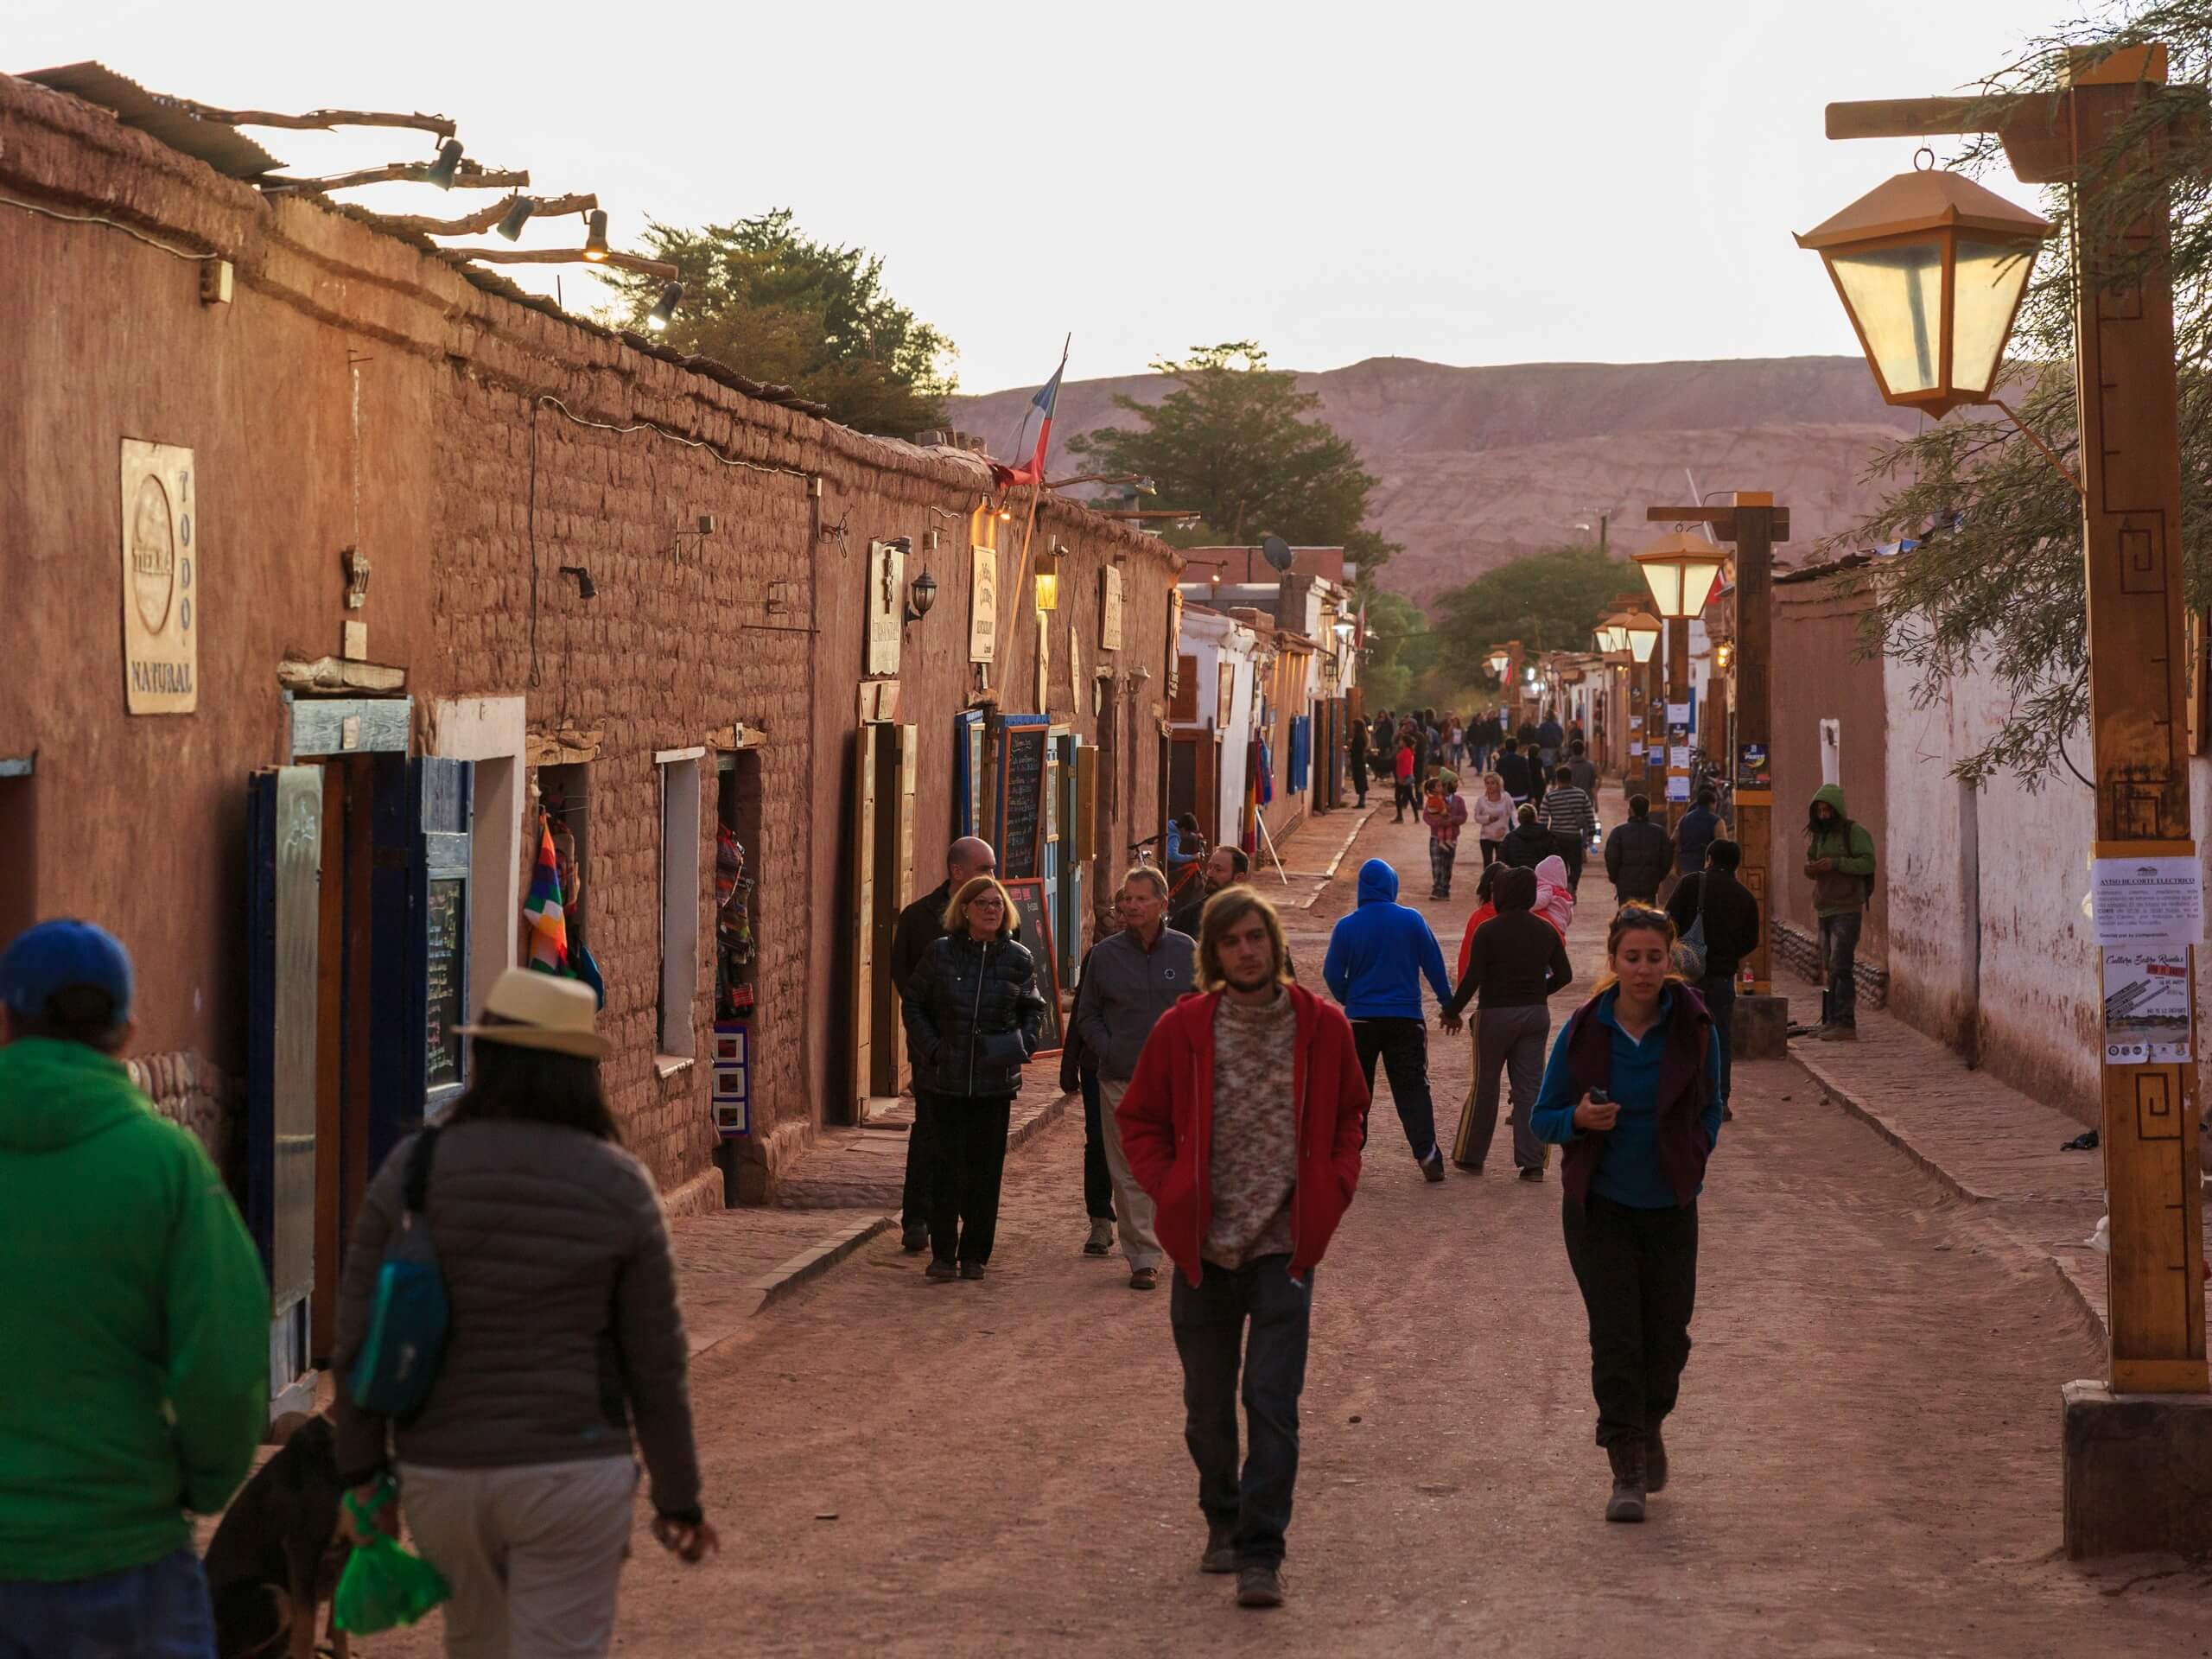 Visiting San Pedro de Atacama while on a tour